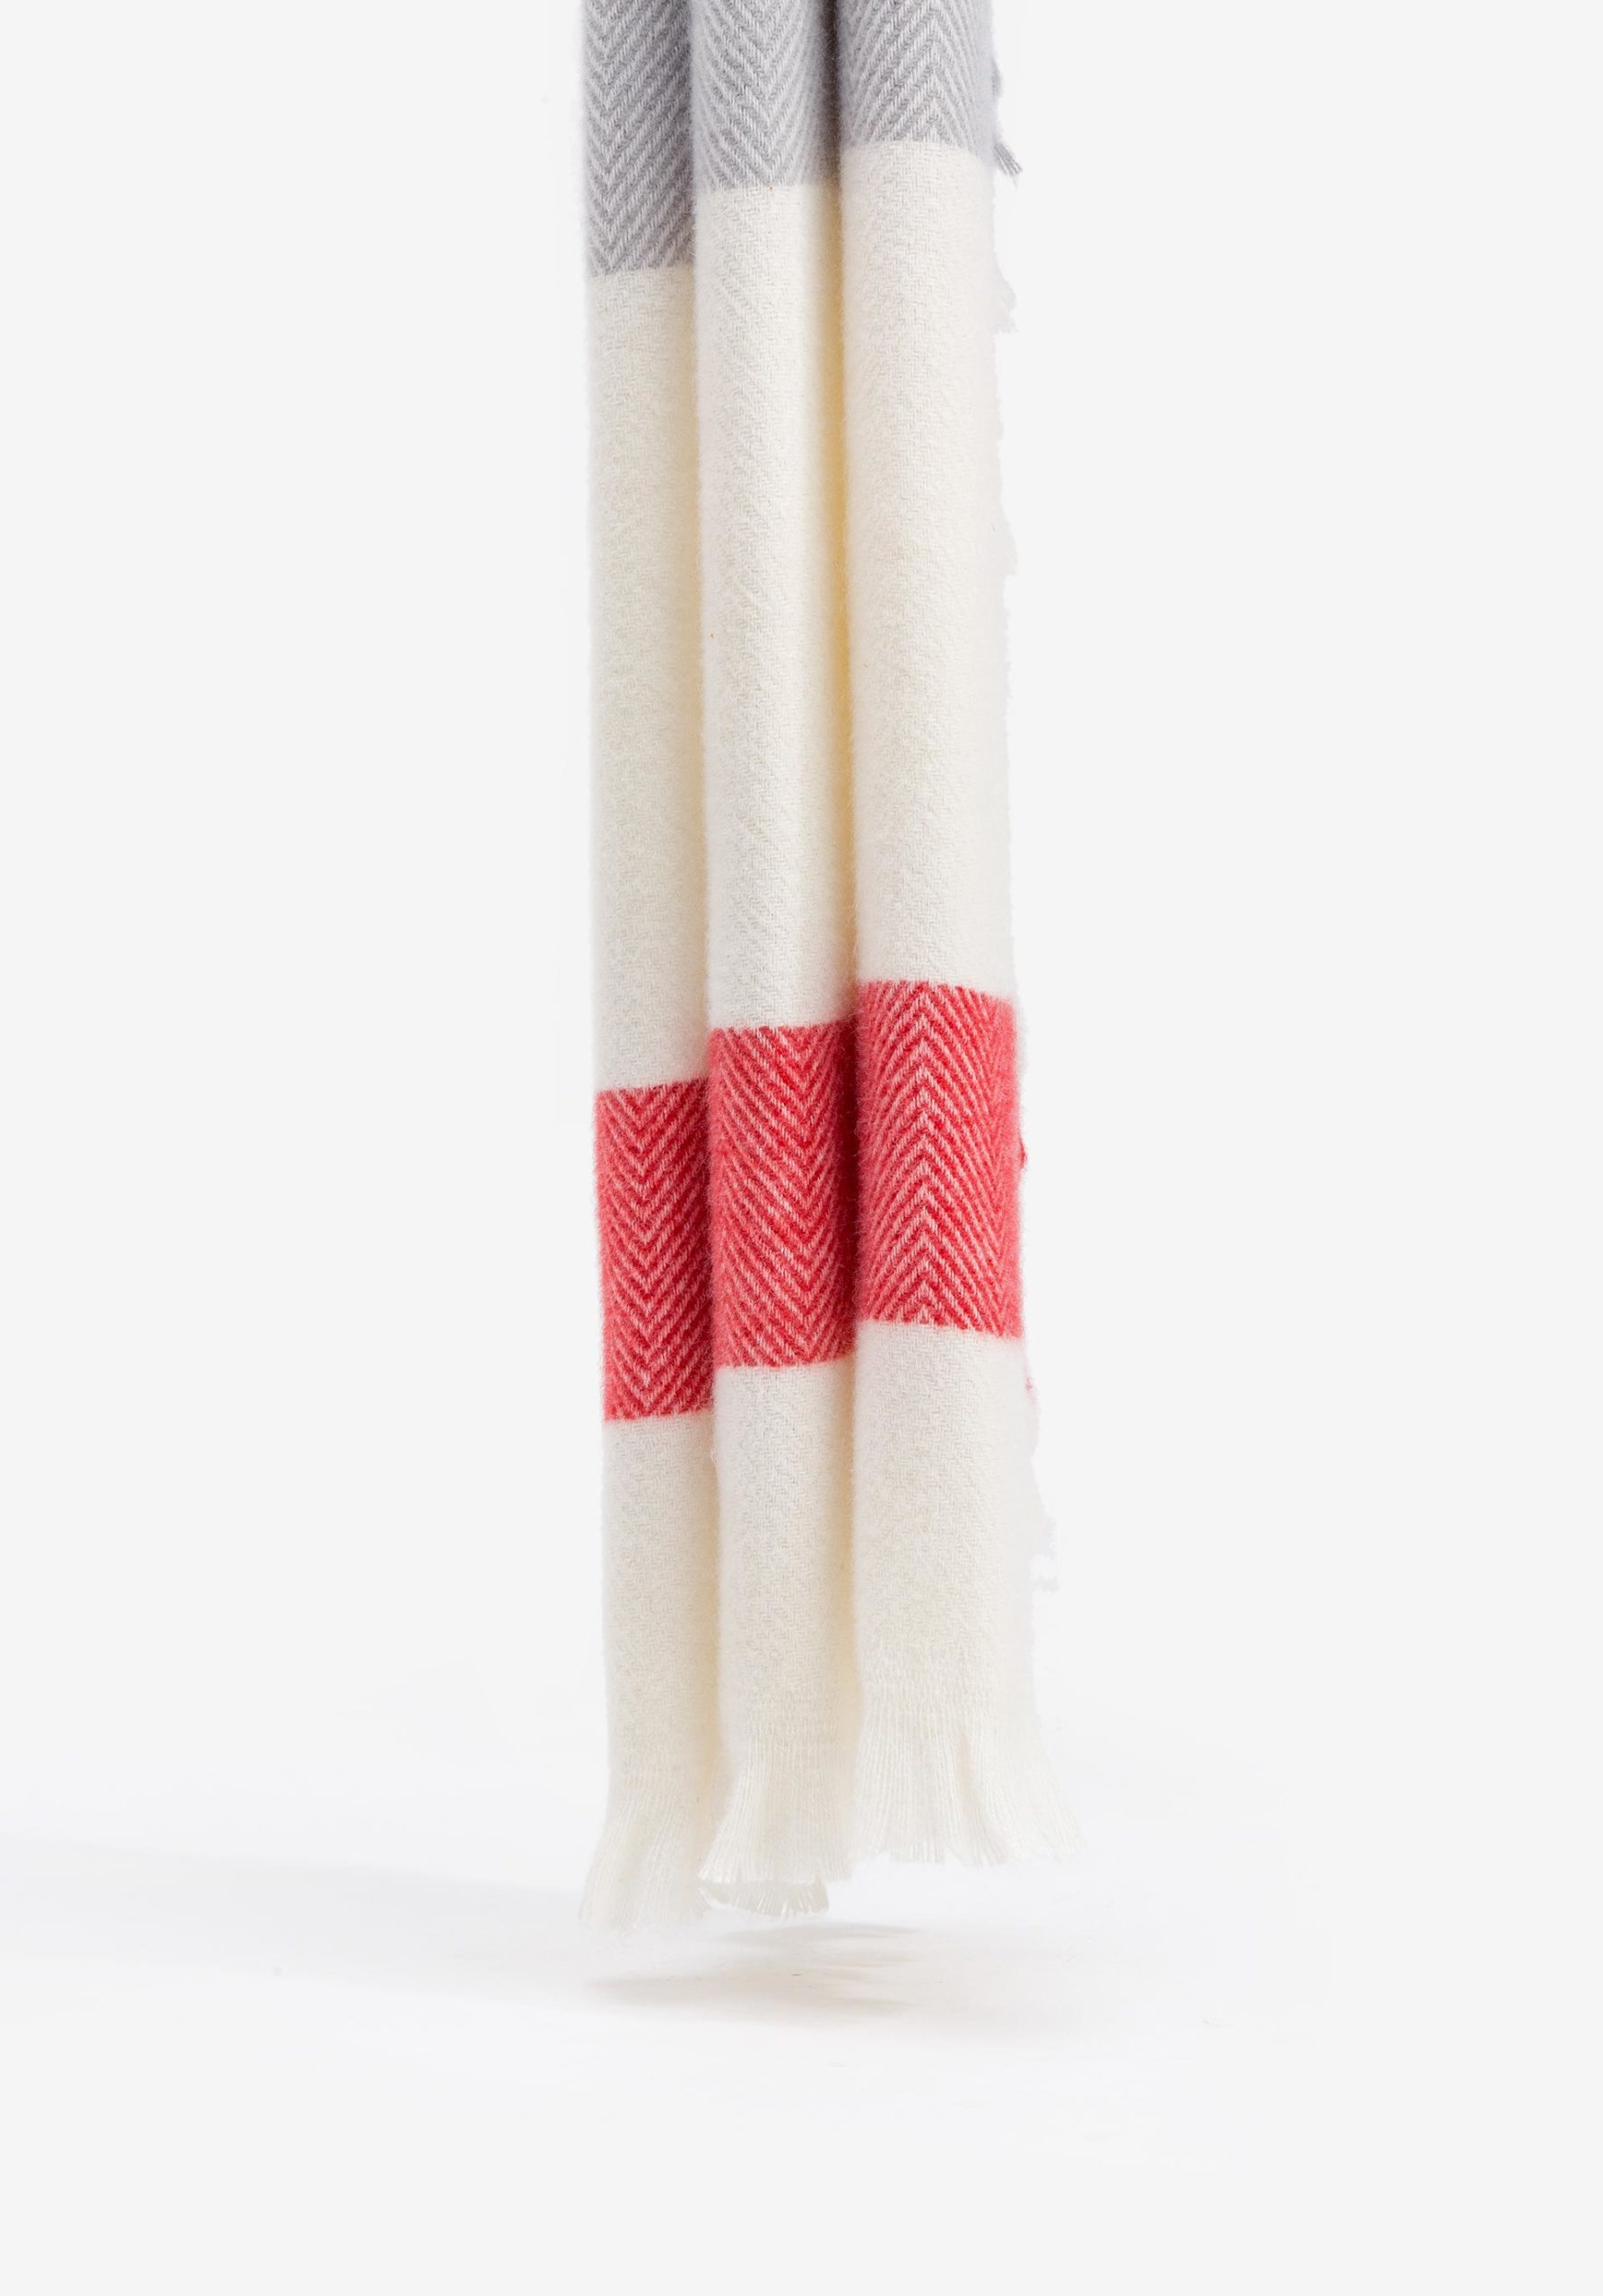 Bufanda rectangular tricolor con raya roja y acabado en flecos. Modelo 71006347 de Vilanova.